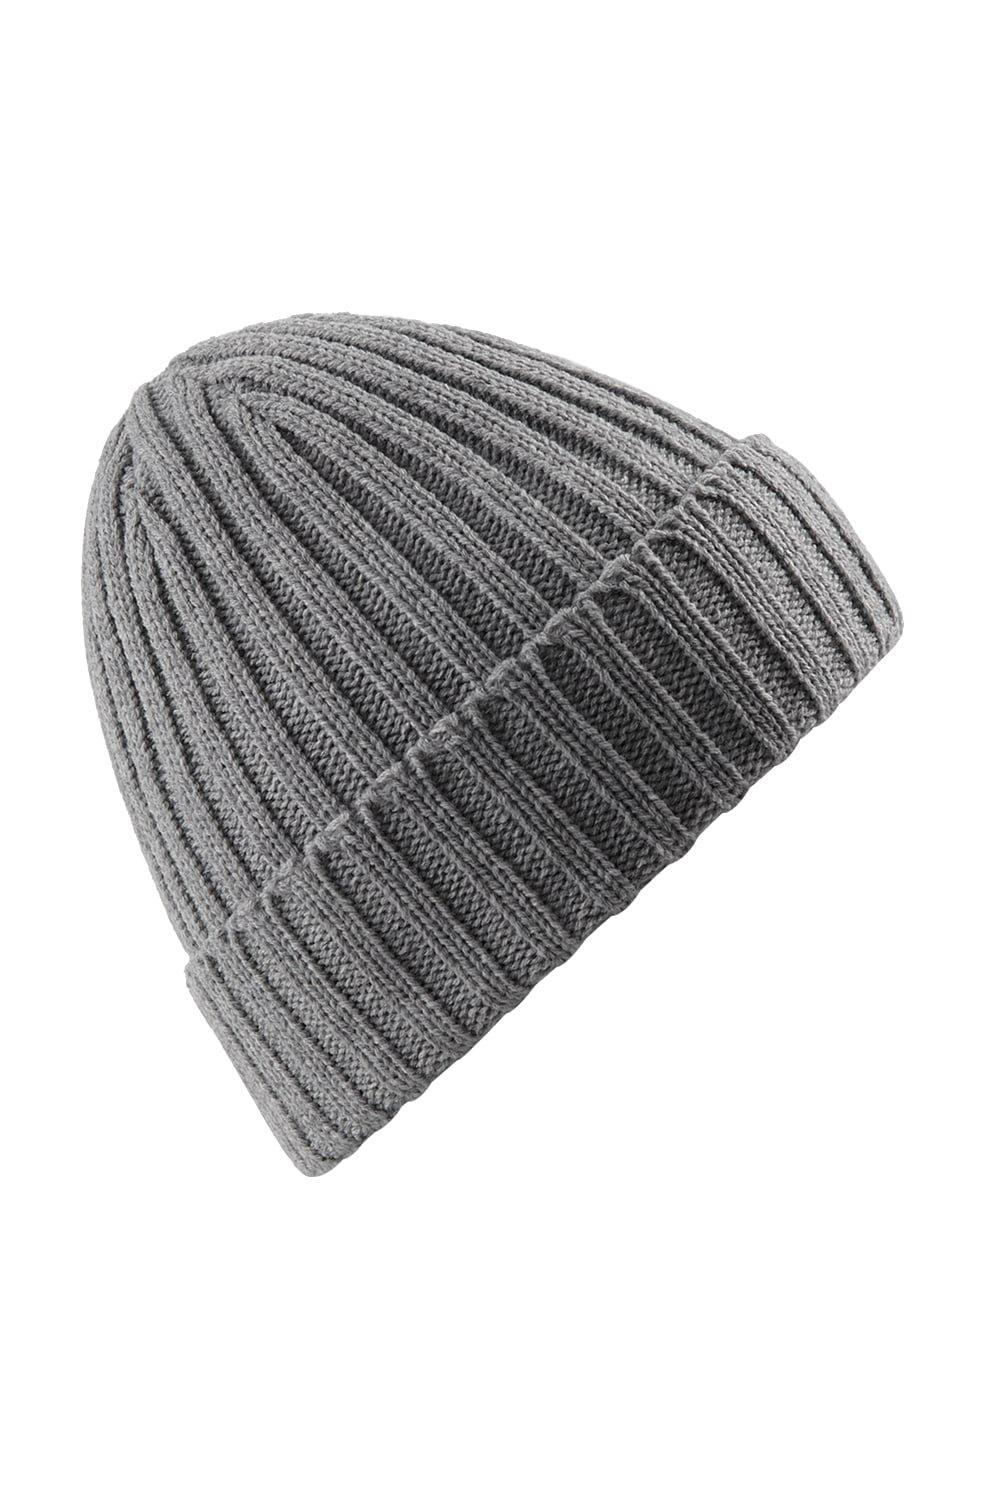 цена Массивная зимняя шапка-бини в рубчик Beechfield, серый